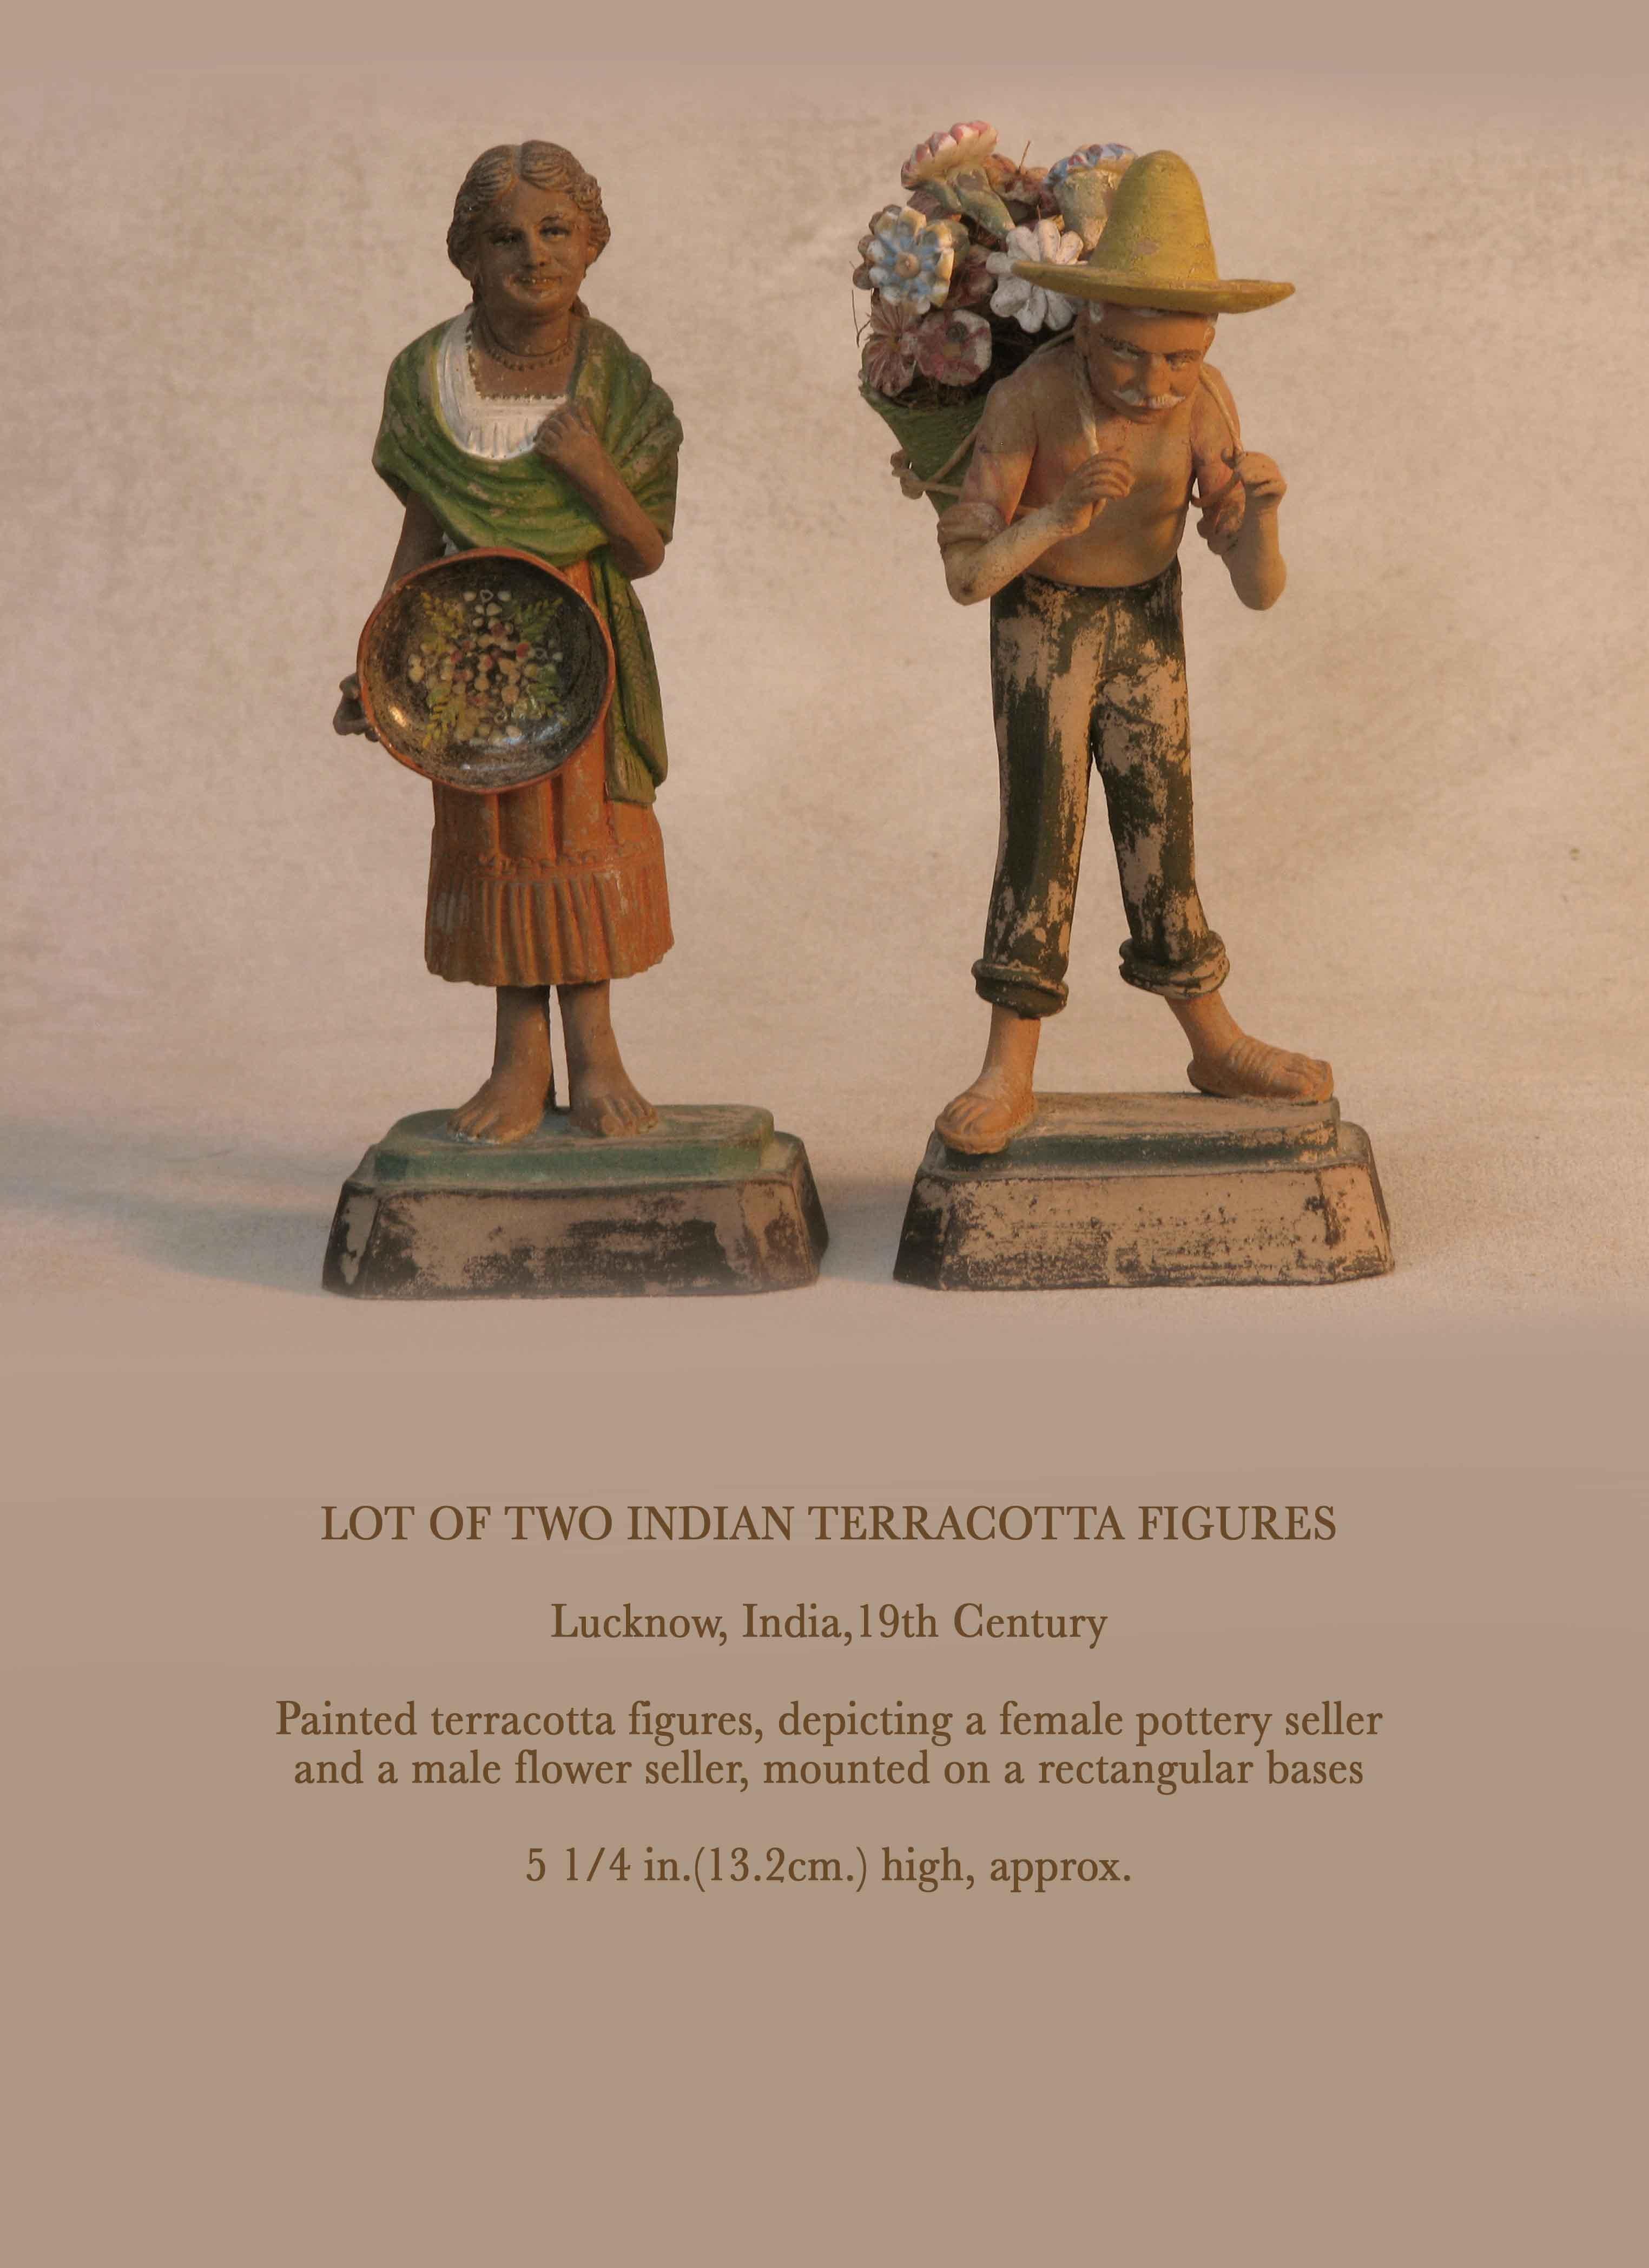 Lot de deux figurines indiennes en terre cuite.

Lucknow, Inde, 19ème siècle.

Figures en terre cuite peinte, représentant une vendeuse de poterie
et un vendeur de fleurs masculin, montés sur des socles rectangulaires.

Mesure 13,2 cm (5 1/4